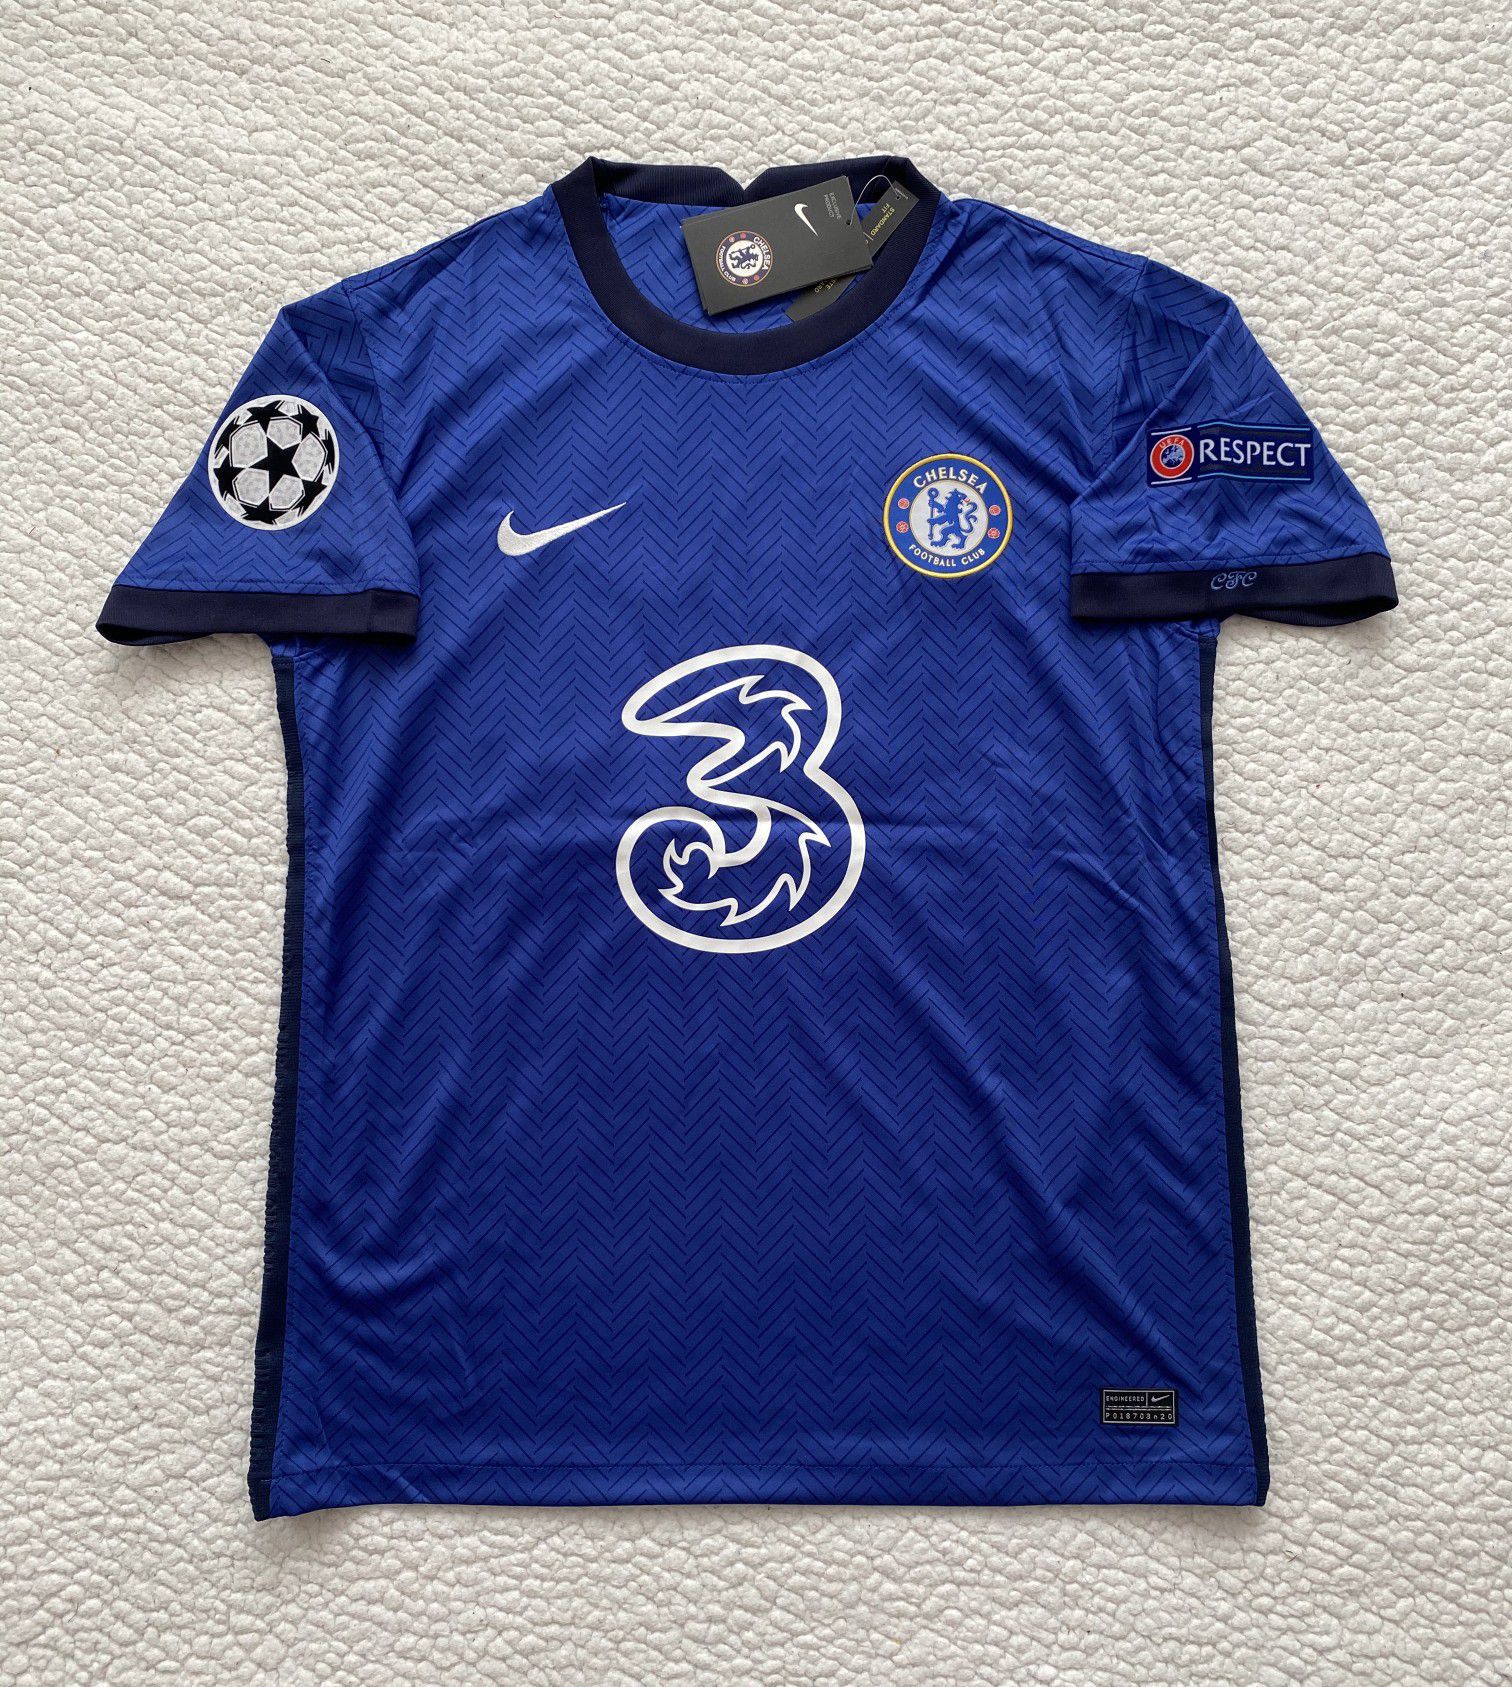 Kai Havertz #29 Chelsea FC Soccer Jersey - Brand New - Men's Blue Champions League 2020 / 2021 Soccer Jersey - Size M / L / XL